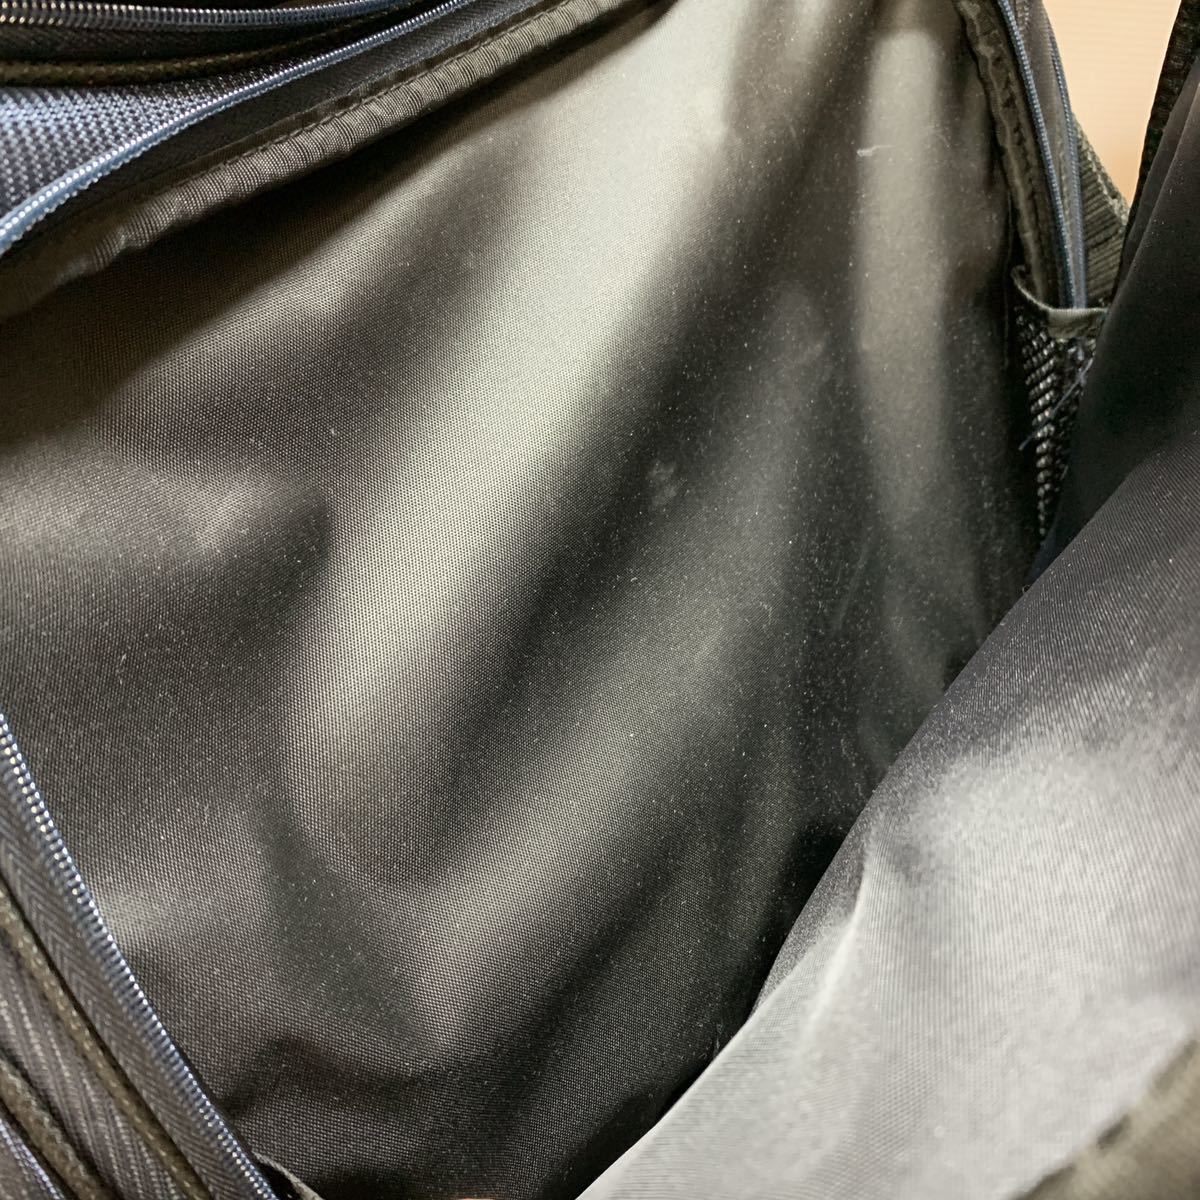 HI-BRID/ hybrid Boston bag sport bag high capacity shoulder .. navy blue color / navy bag shoulder bag travel business trip ( stone 674